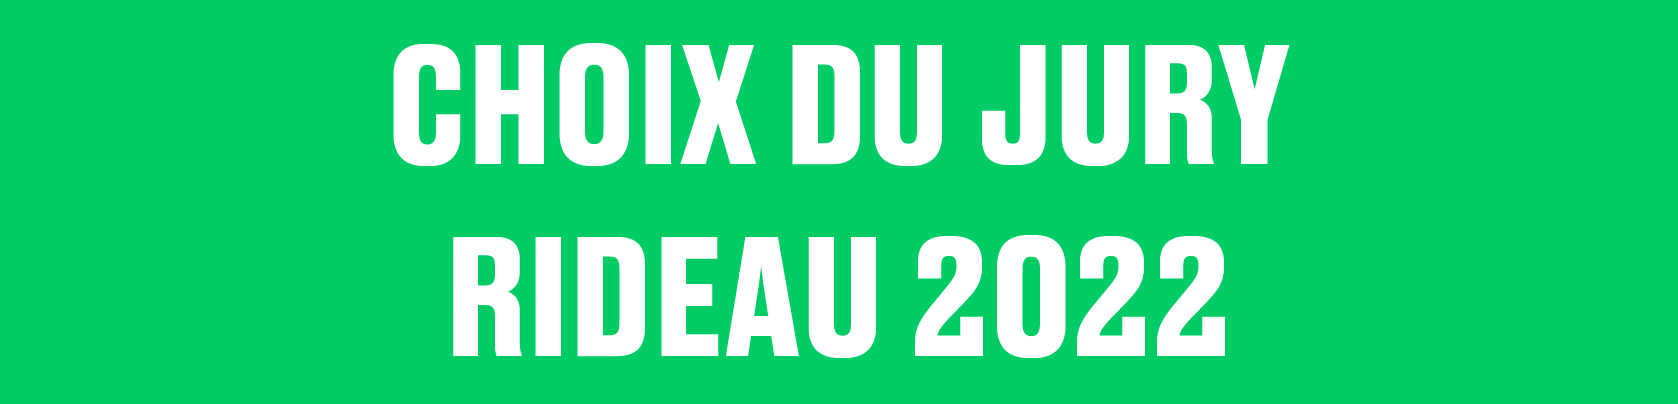 RIDEAU 2022 Choix du jury Efer Parts+Labour_Danse